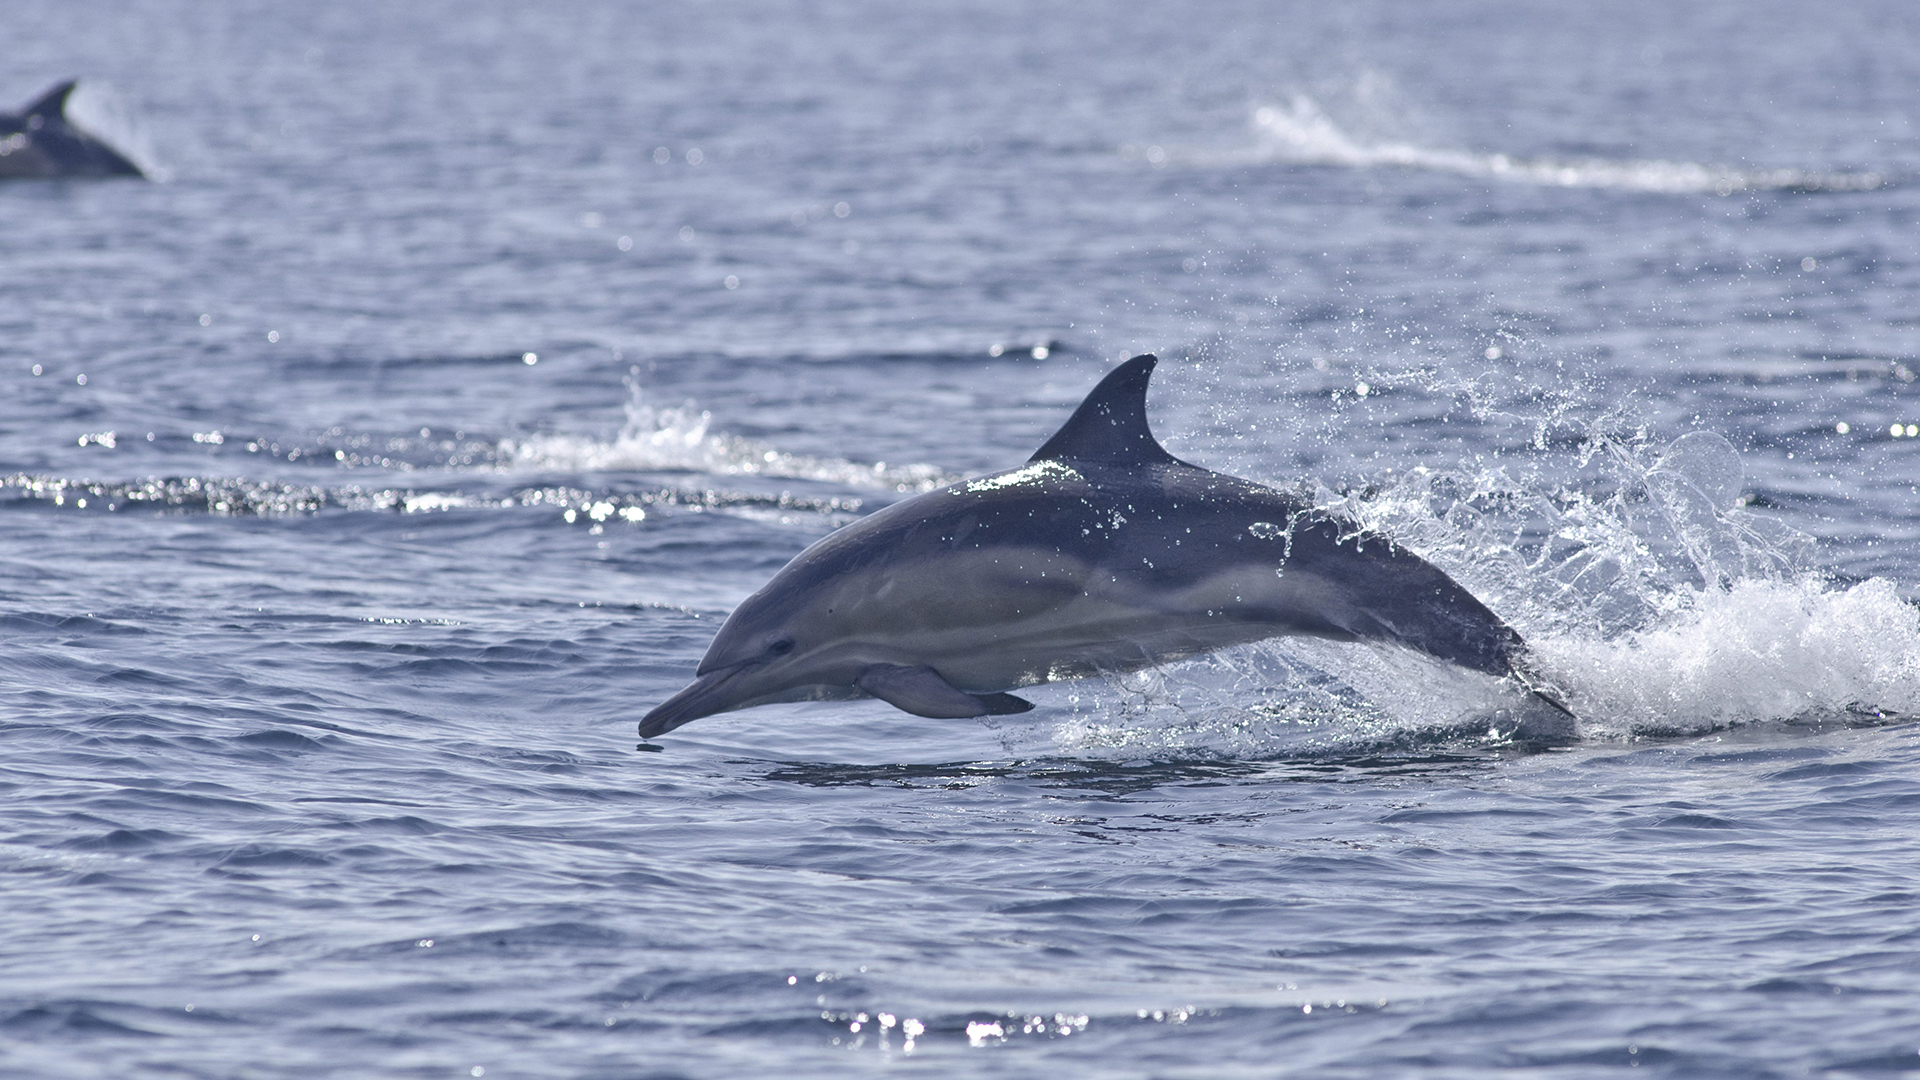 Ein Delfin taucht aus dem Meer auf. | picture alliance / Mark Harding/